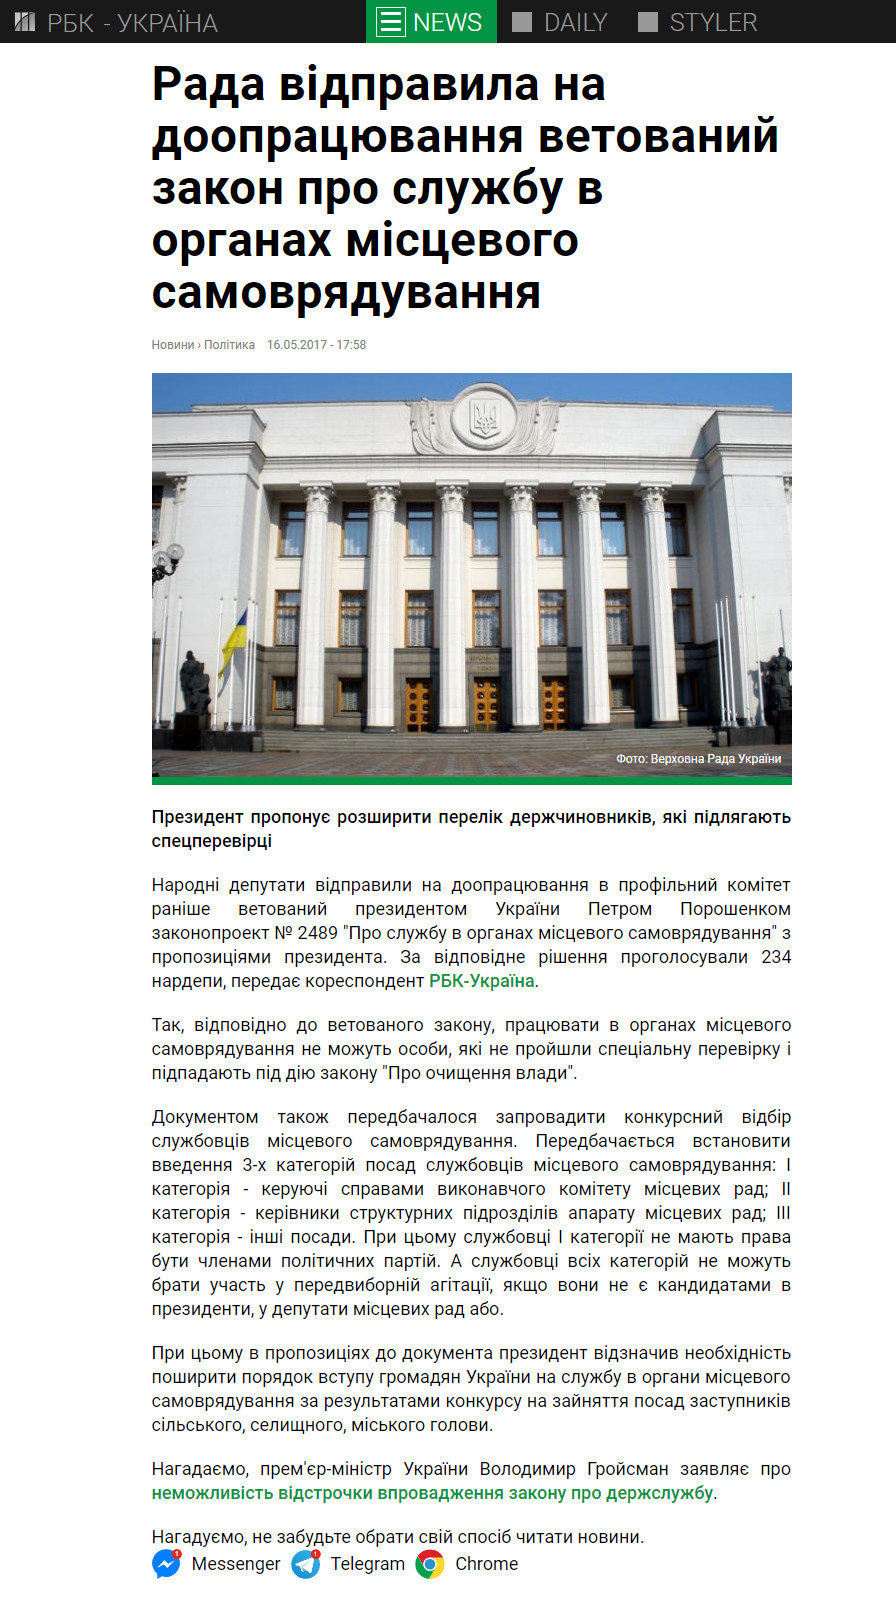 https://www.rbc.ua/ukr/news/rada-otpravila-dorabotku-vetirovannyy-zakon-1494946740.html